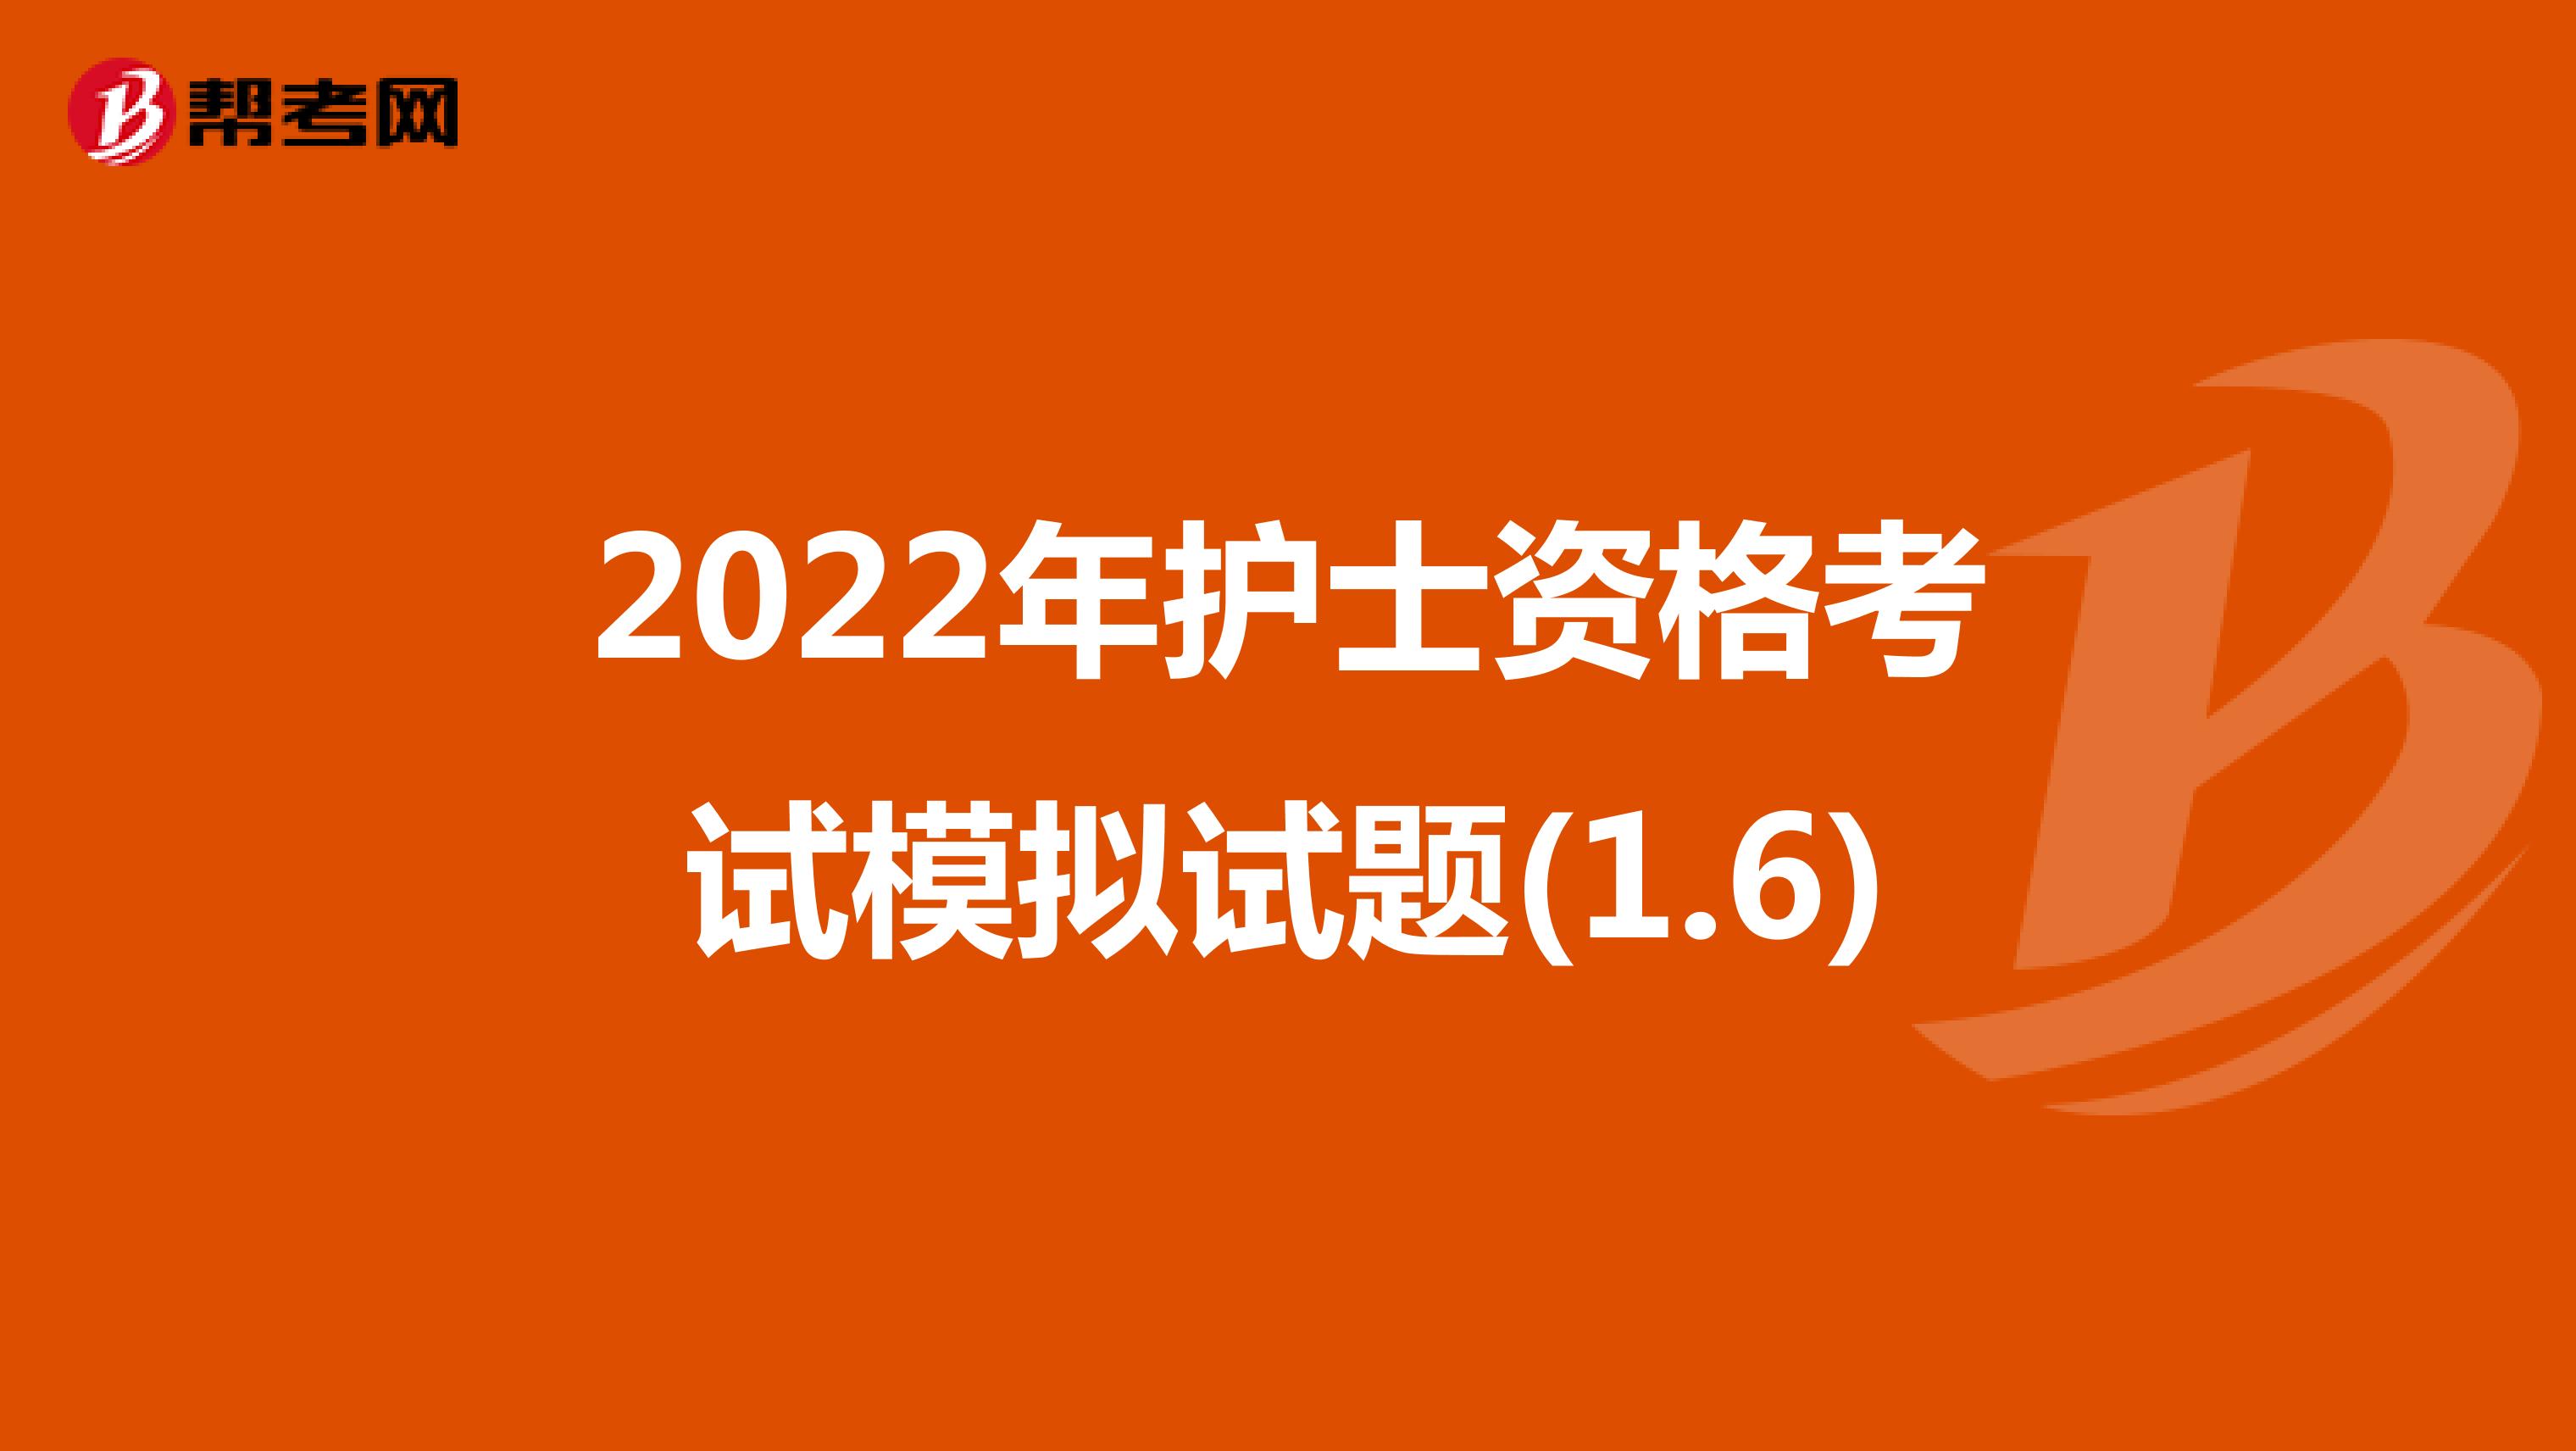 2022年护士资格考试模拟试题(1.6)